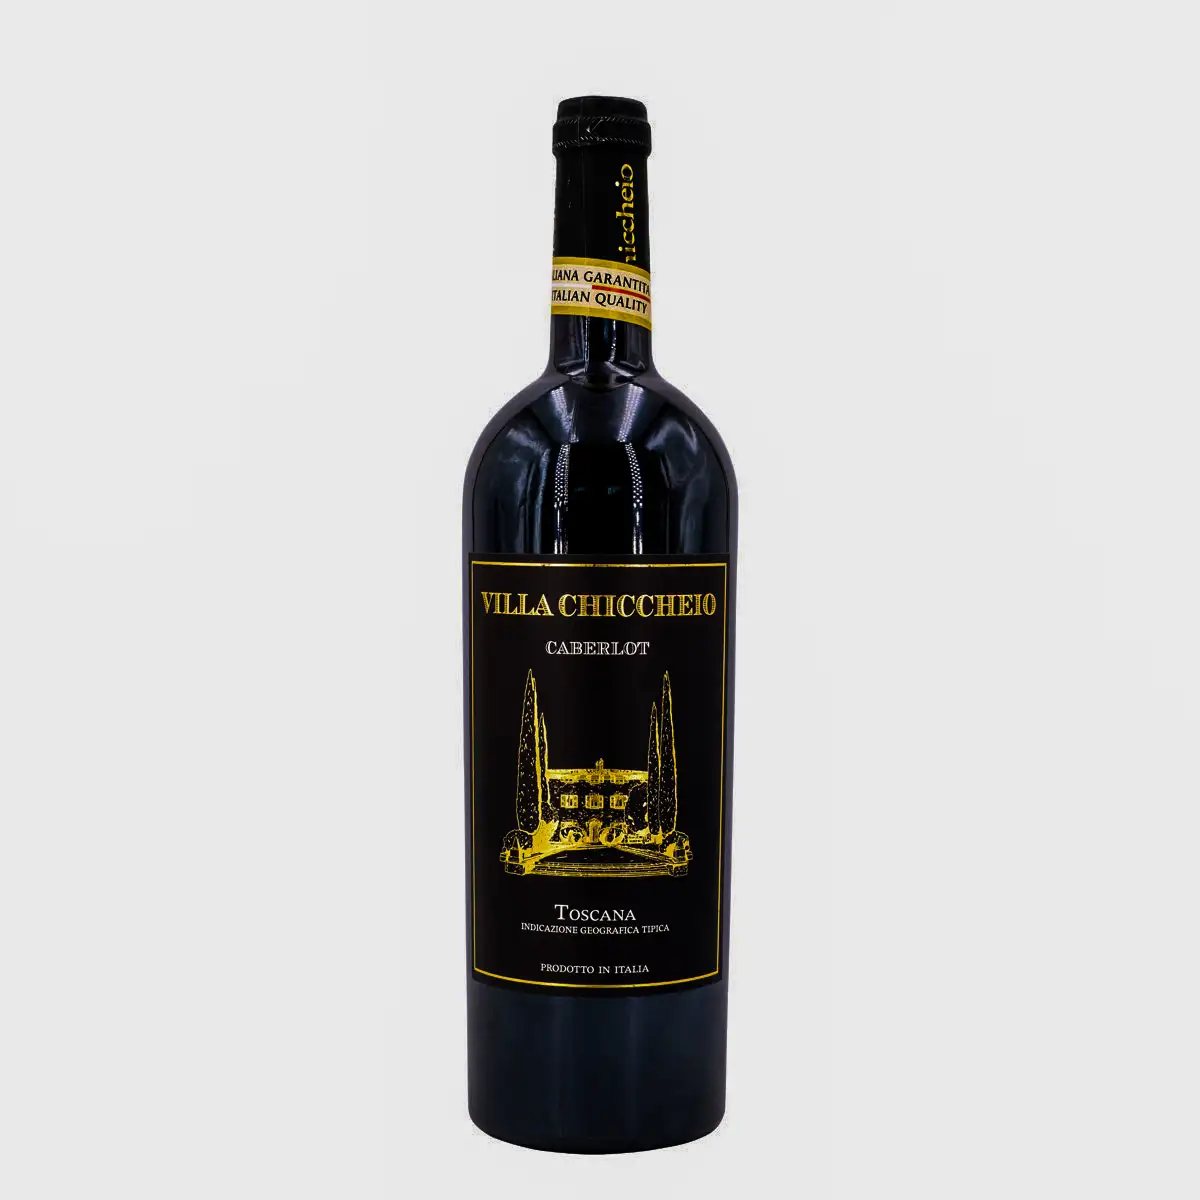 อิตาลีแดงไวน์ Caberlot IGT ทำในทัสคานีไวน์แห้งจาก Merlot และ Cabernet องุ่น